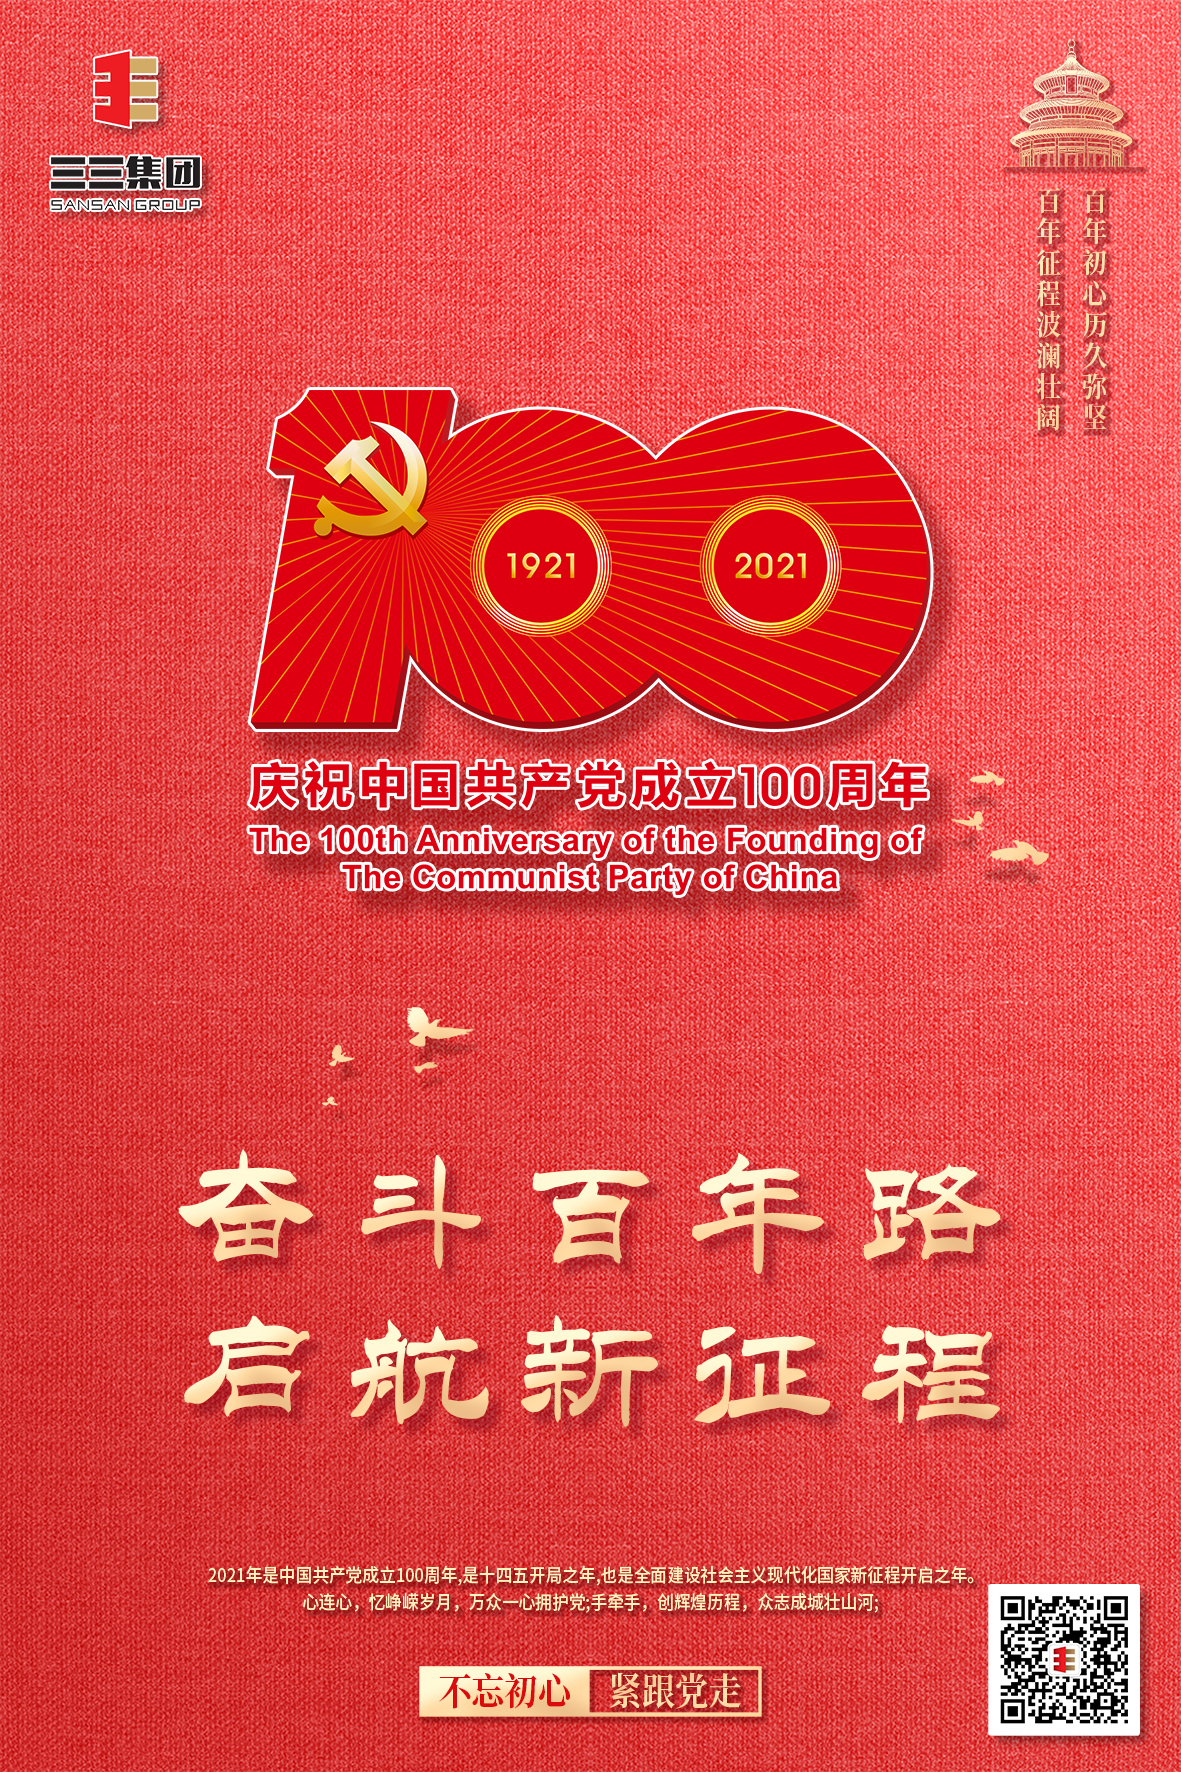 三三建工组织收看庆祝中国共产党成立100周年庆典大会